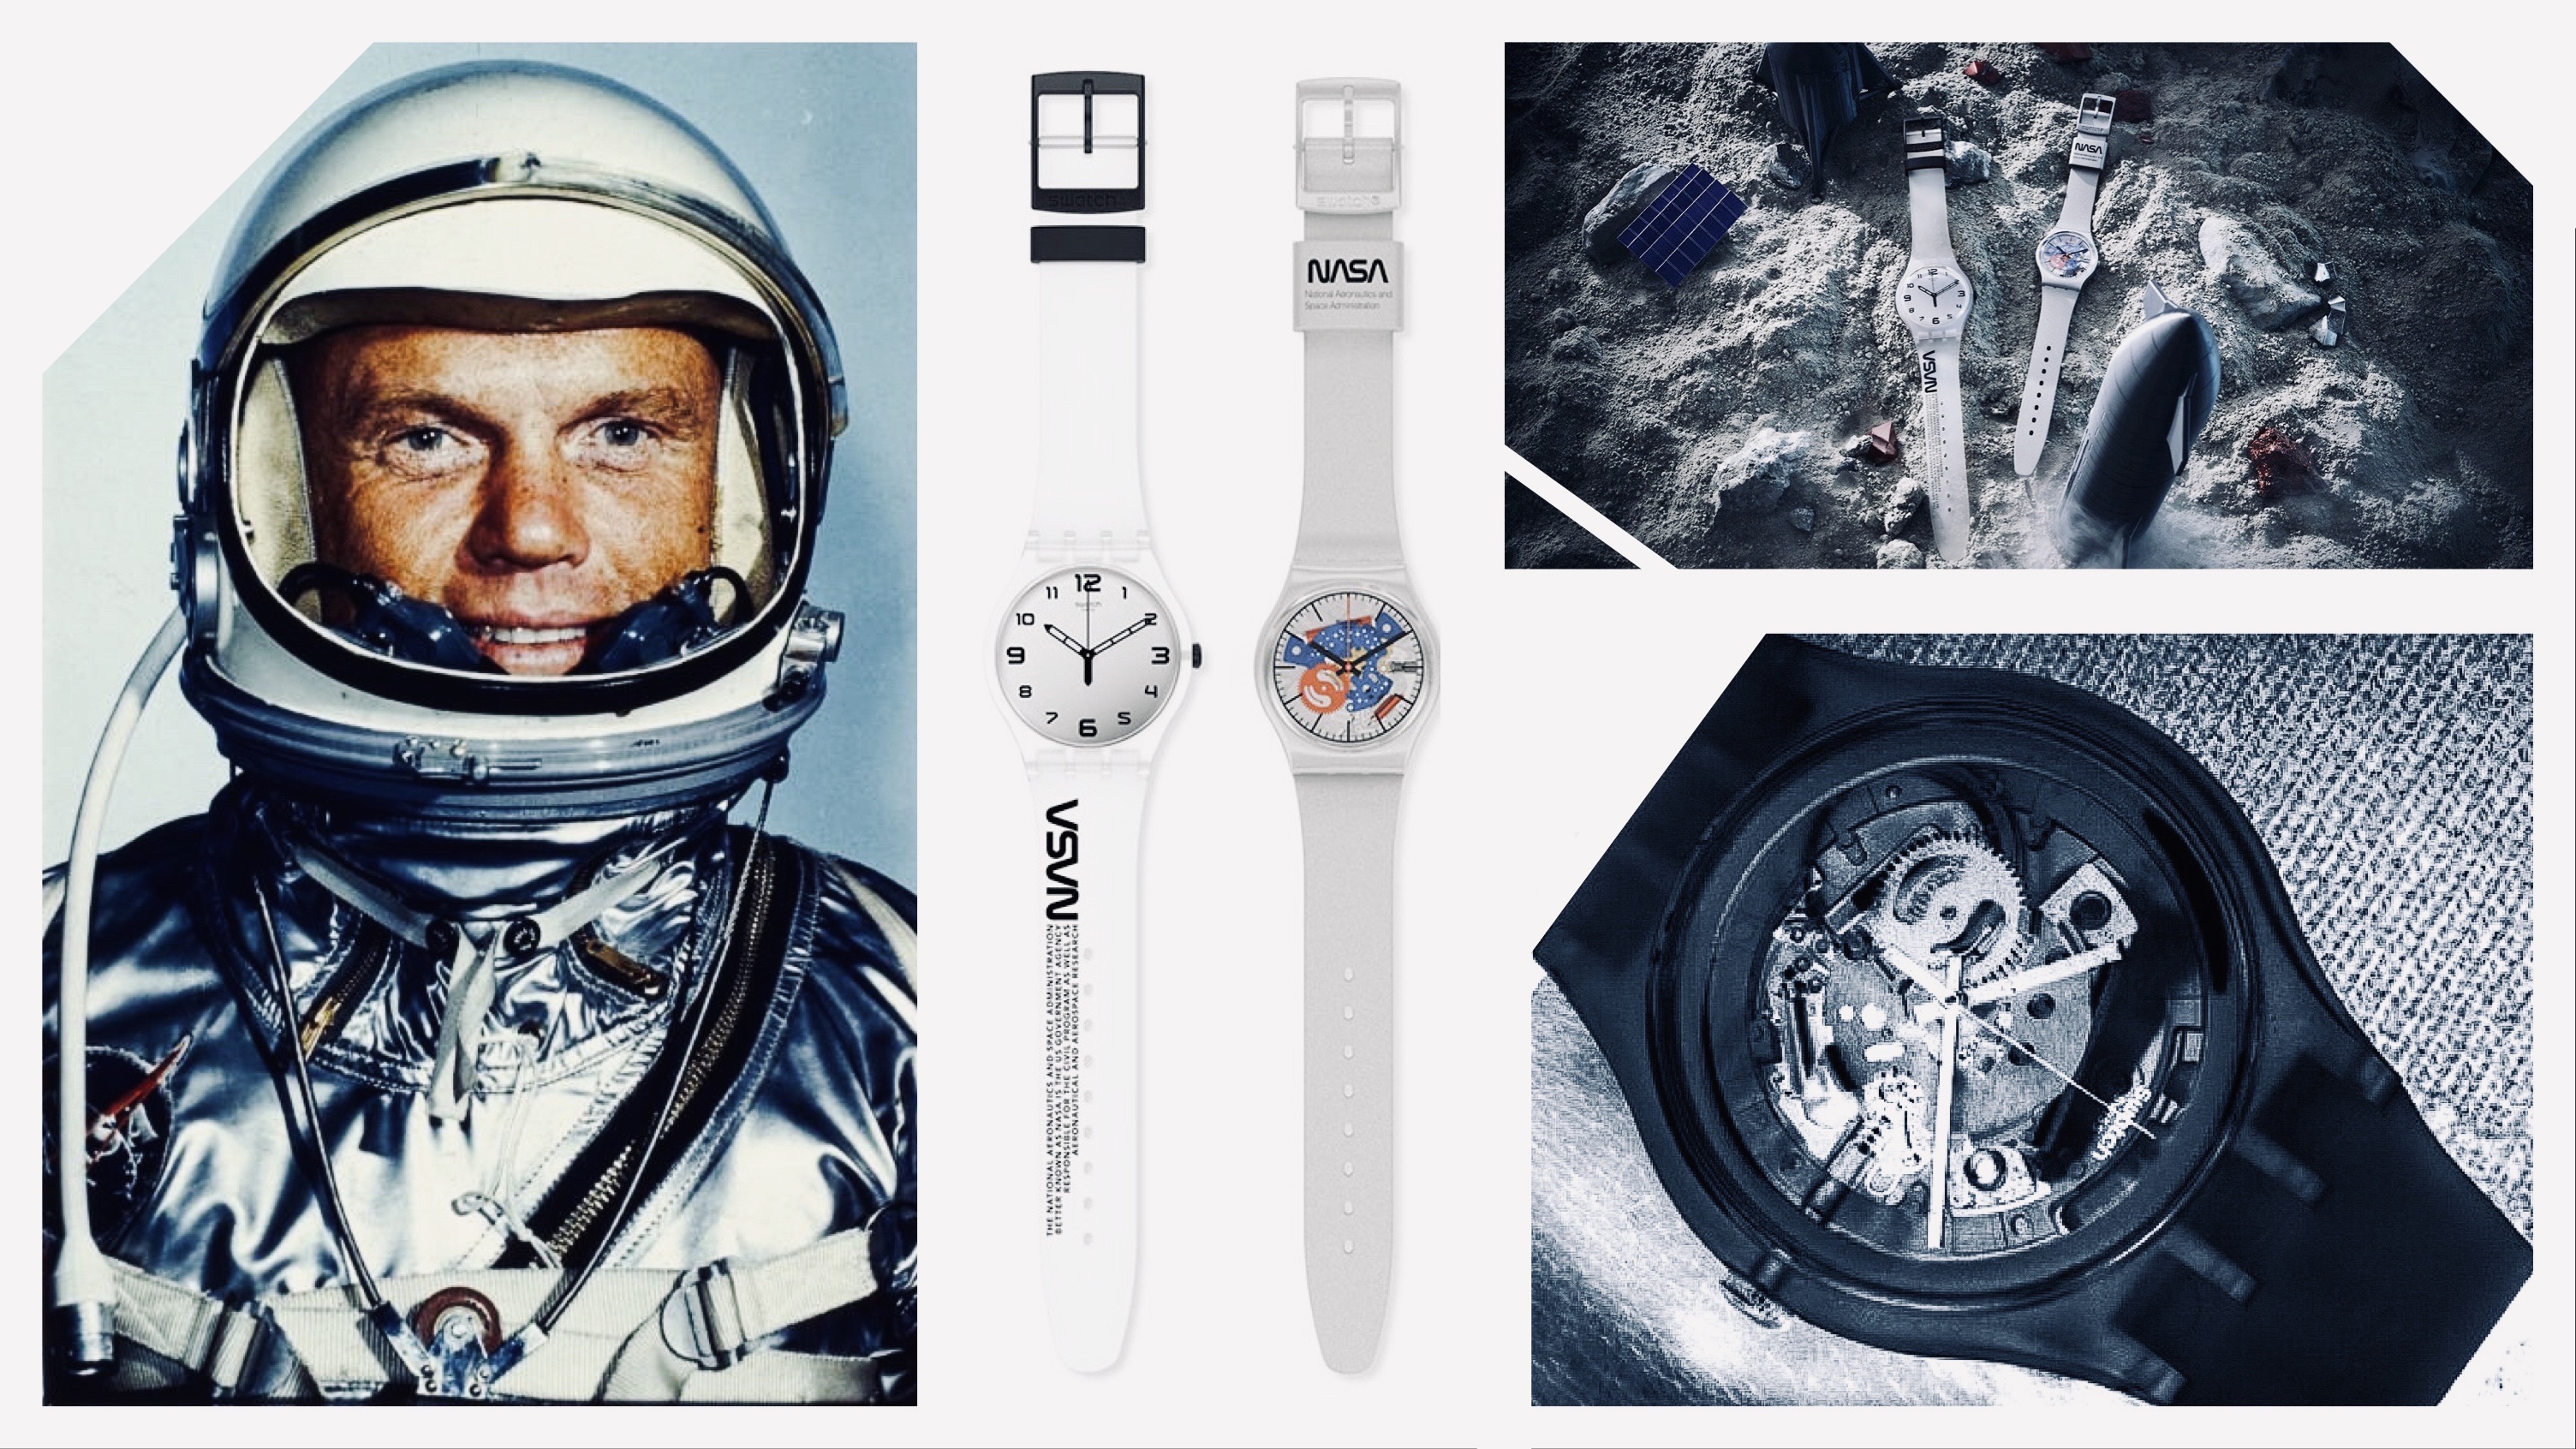 A Space Race (középen balra) fehér-ezüstös színvilága a Gemini- és Mercury-projektek űrruháiéval harmonizál.